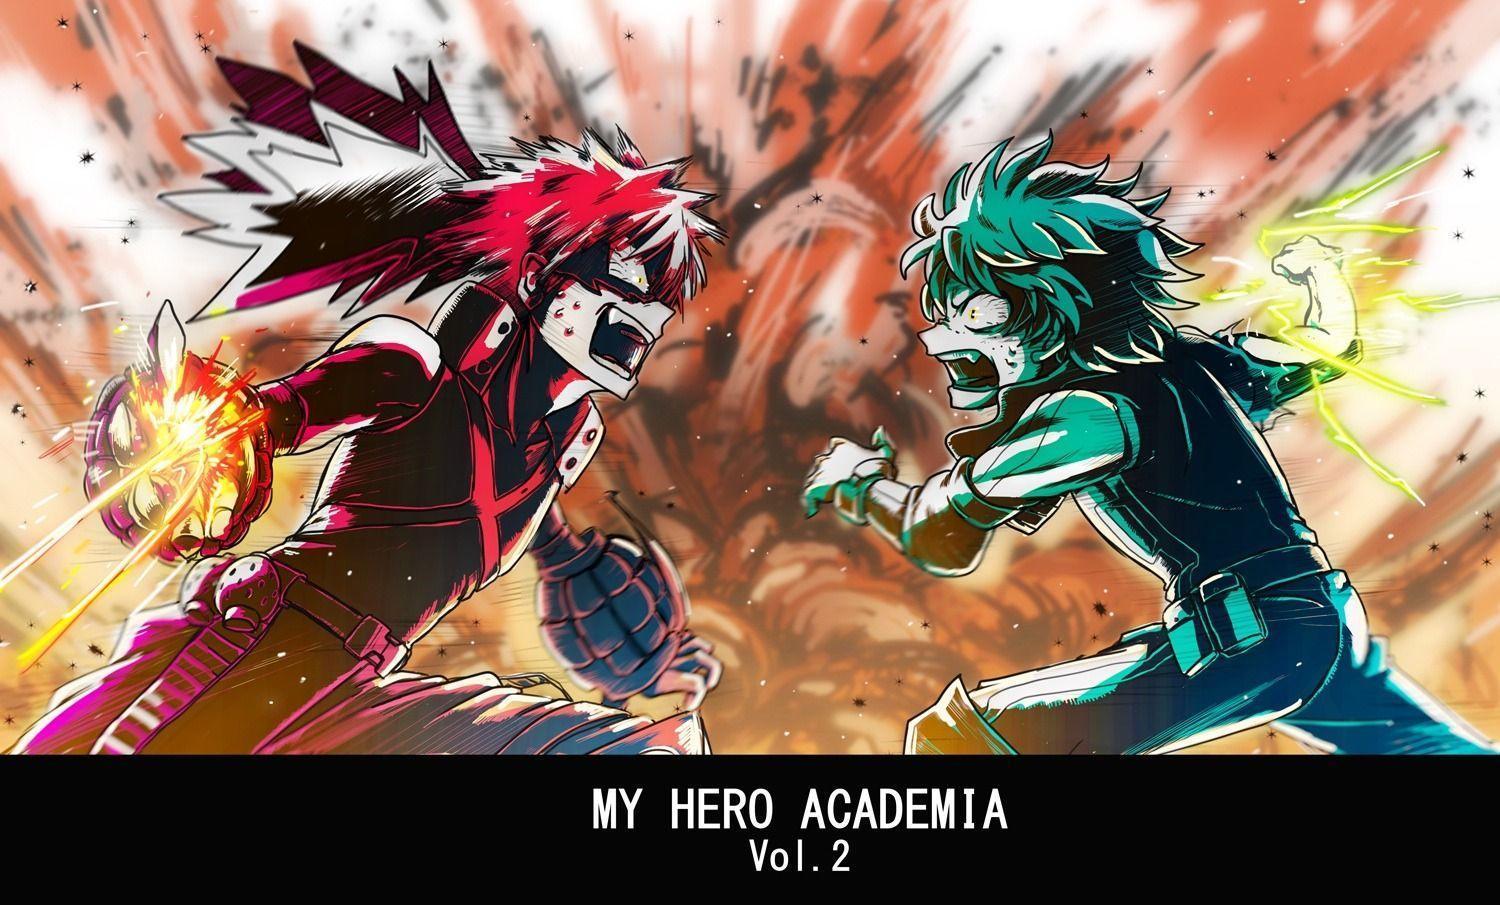 Any good Boku no hero Academia Background?